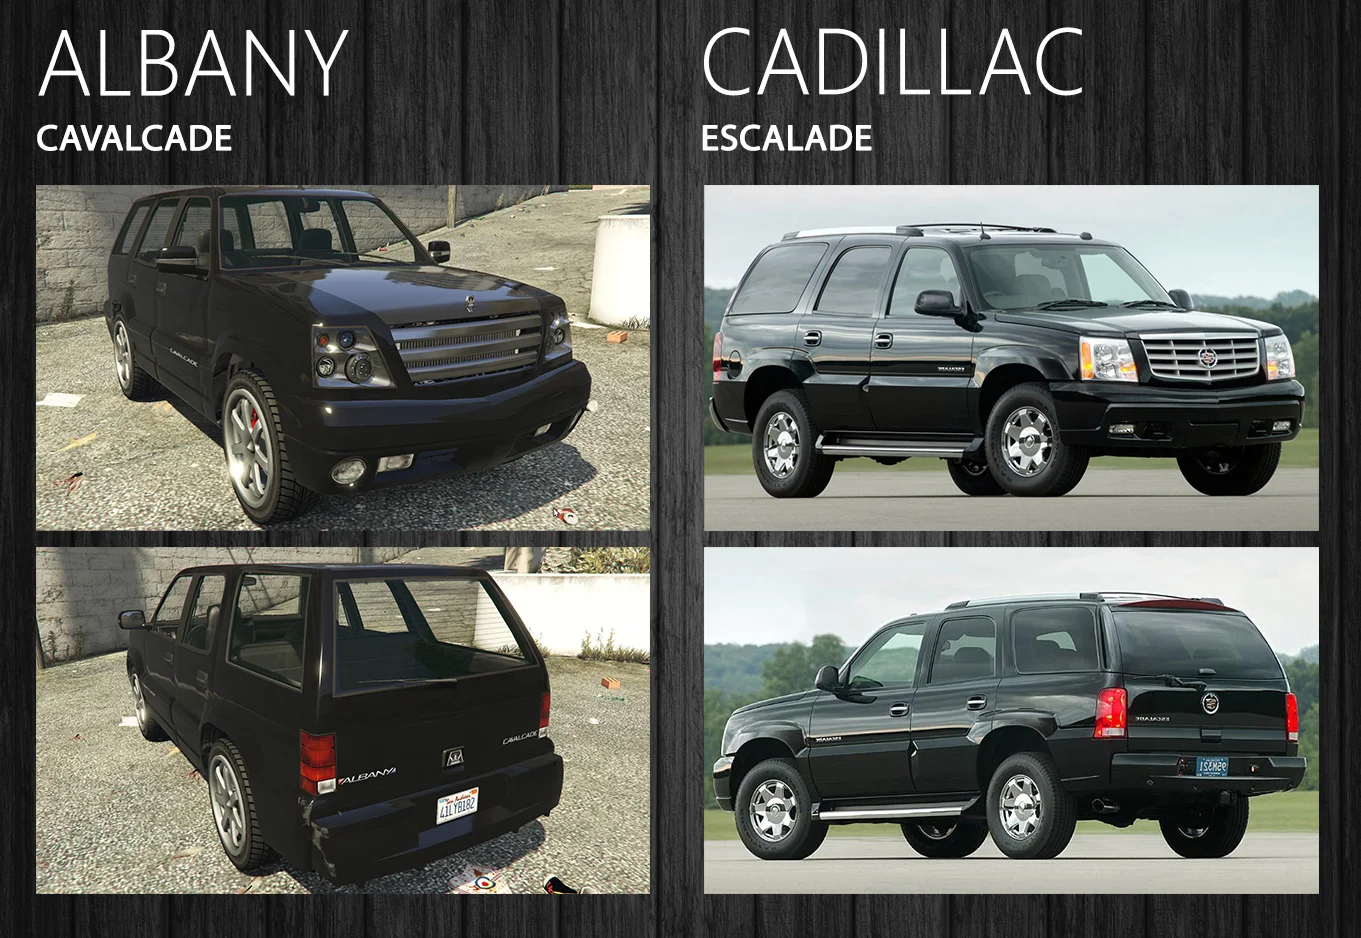 А вот вполне себе серийный [Cadillac Escalade](https://ru.motor1.com/news/279549/cadillac-dobavil-escalade-sportivnyj-variant/) в игровом мире появился сразу в нескольких поколениях — все как в жизни.